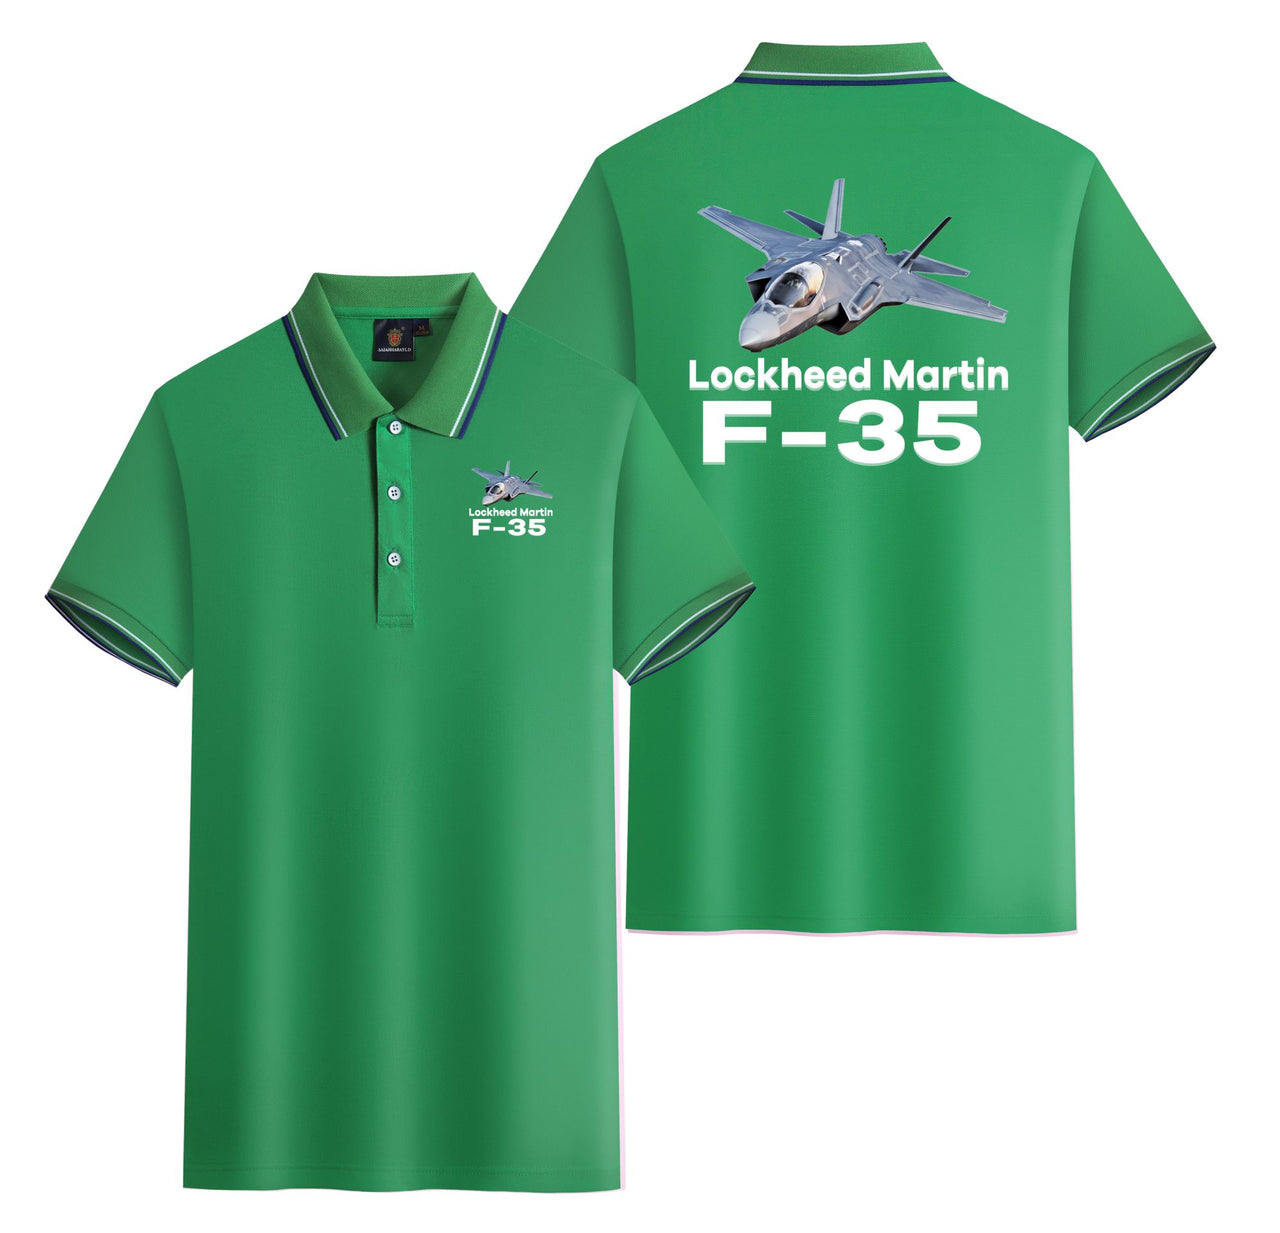 The Lockheed Martin F35 Designed Stylish Polo T-Shirts (Double-Side)